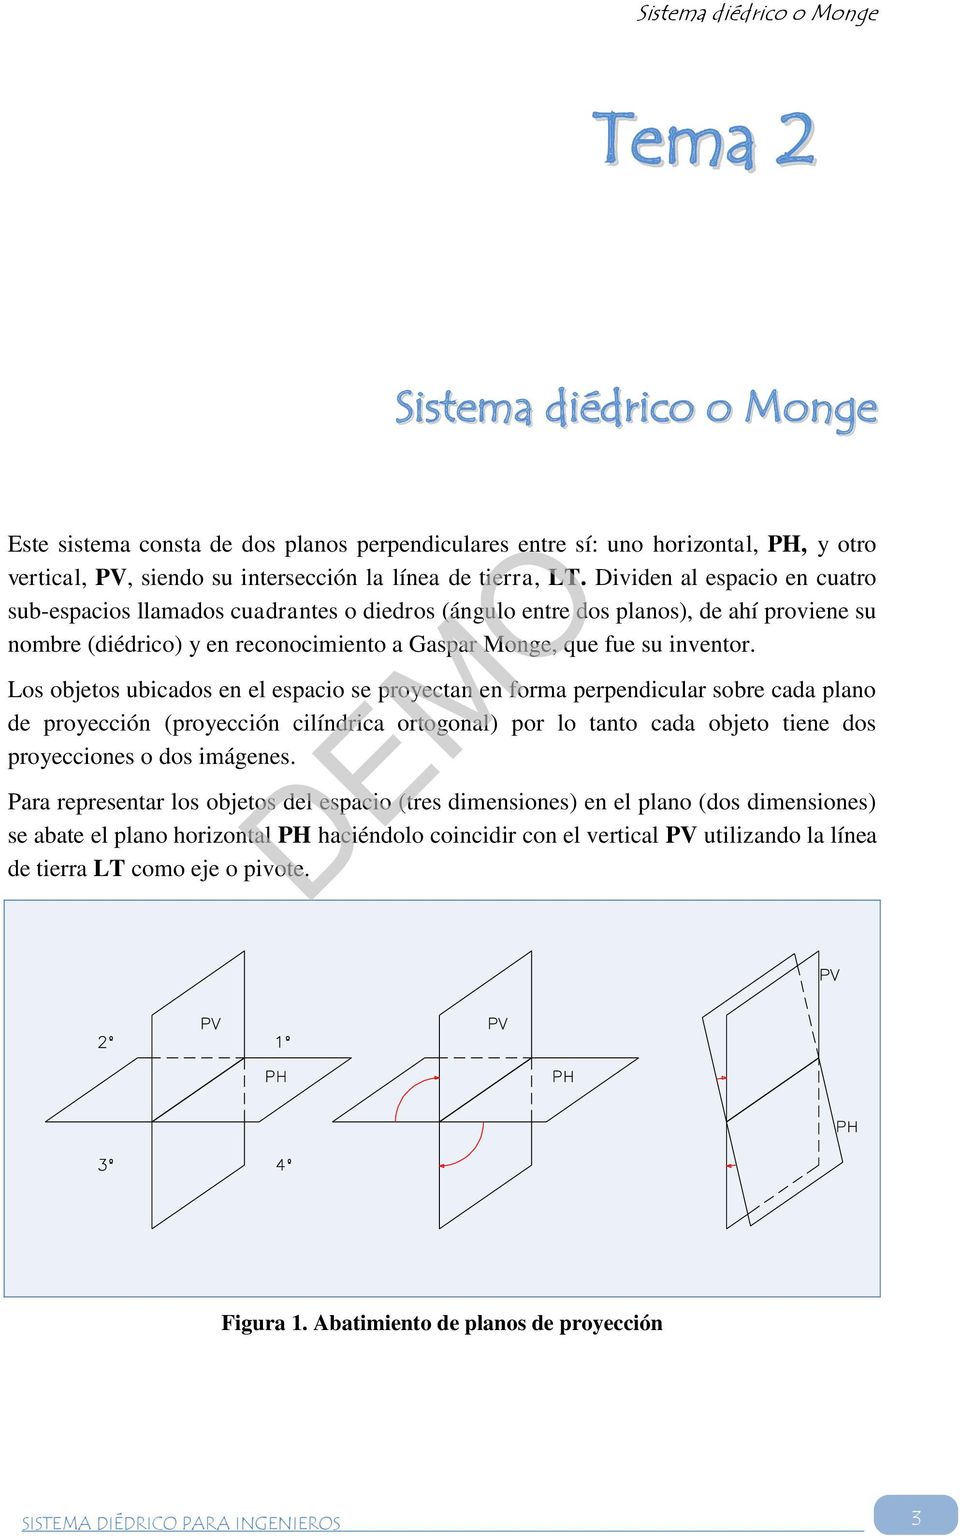 Dividen al espacio en cuatro sub-espacios llamados cuadrantes o diedros (ángulo entre dos planos), de ahí proviene su nombre (diédrico) y en reconocimiento a Gaspar Monge, que fue su inventor.